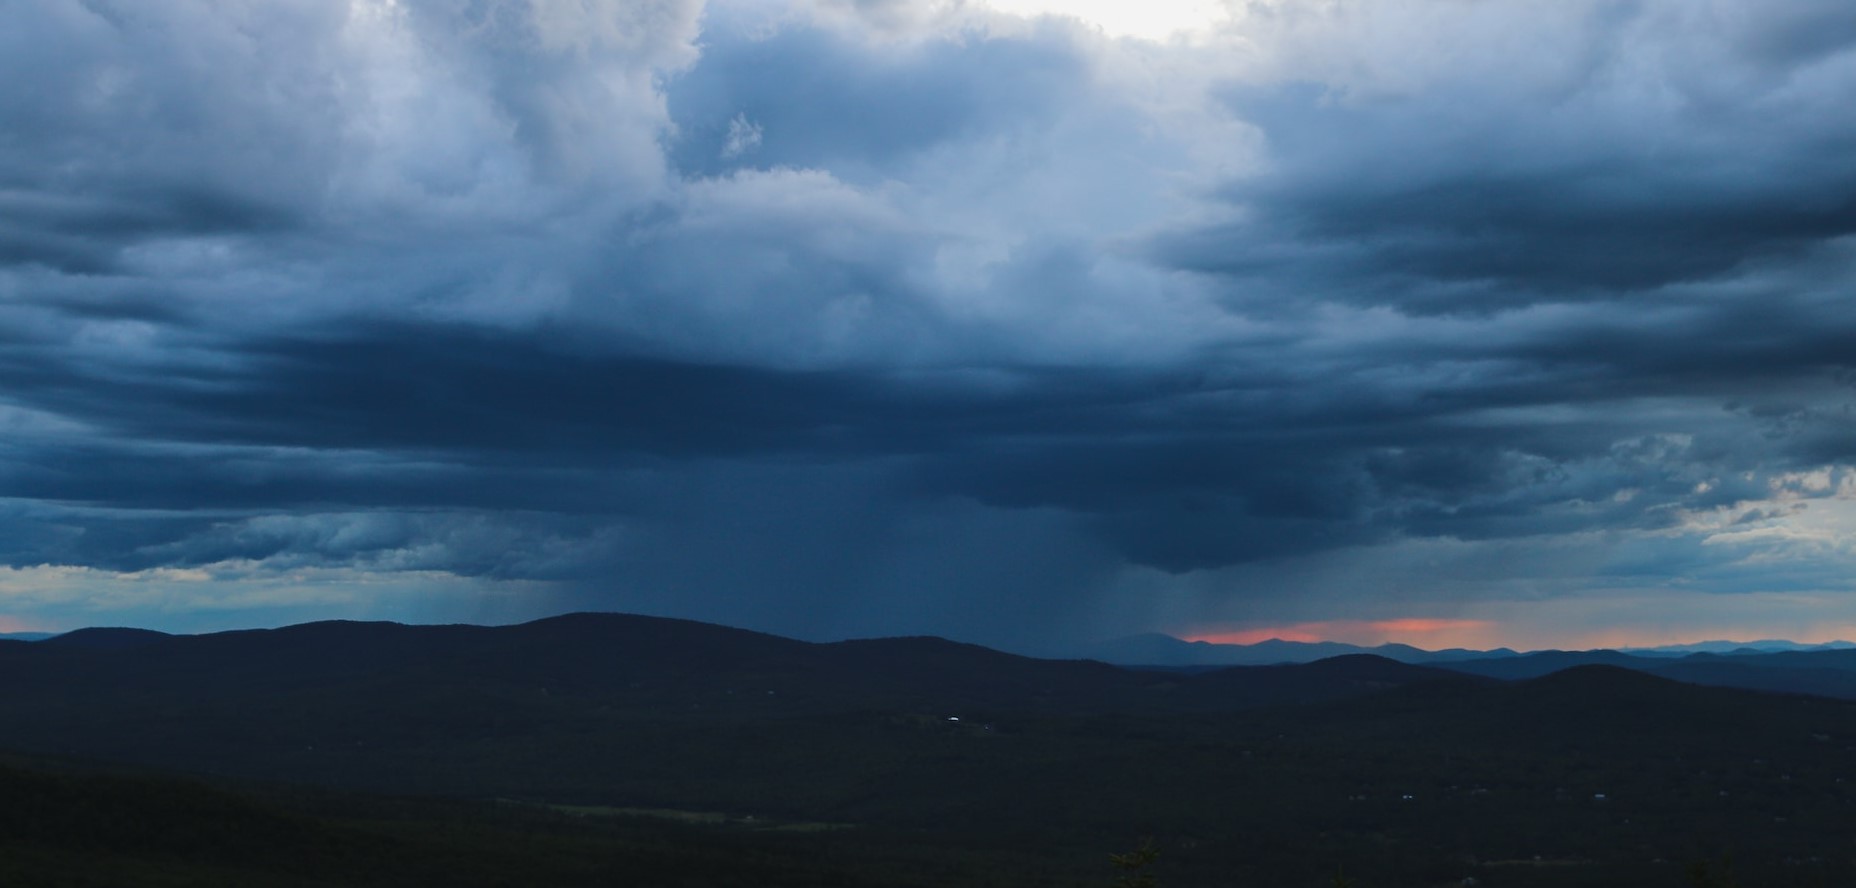 Ο καιρός με την Ν. Ζιακοπούλου: Συνεχίζονται οι τοπικές βροχές – Επιδείνωση την Τετάρτη με ισχυρές καταιγίδες